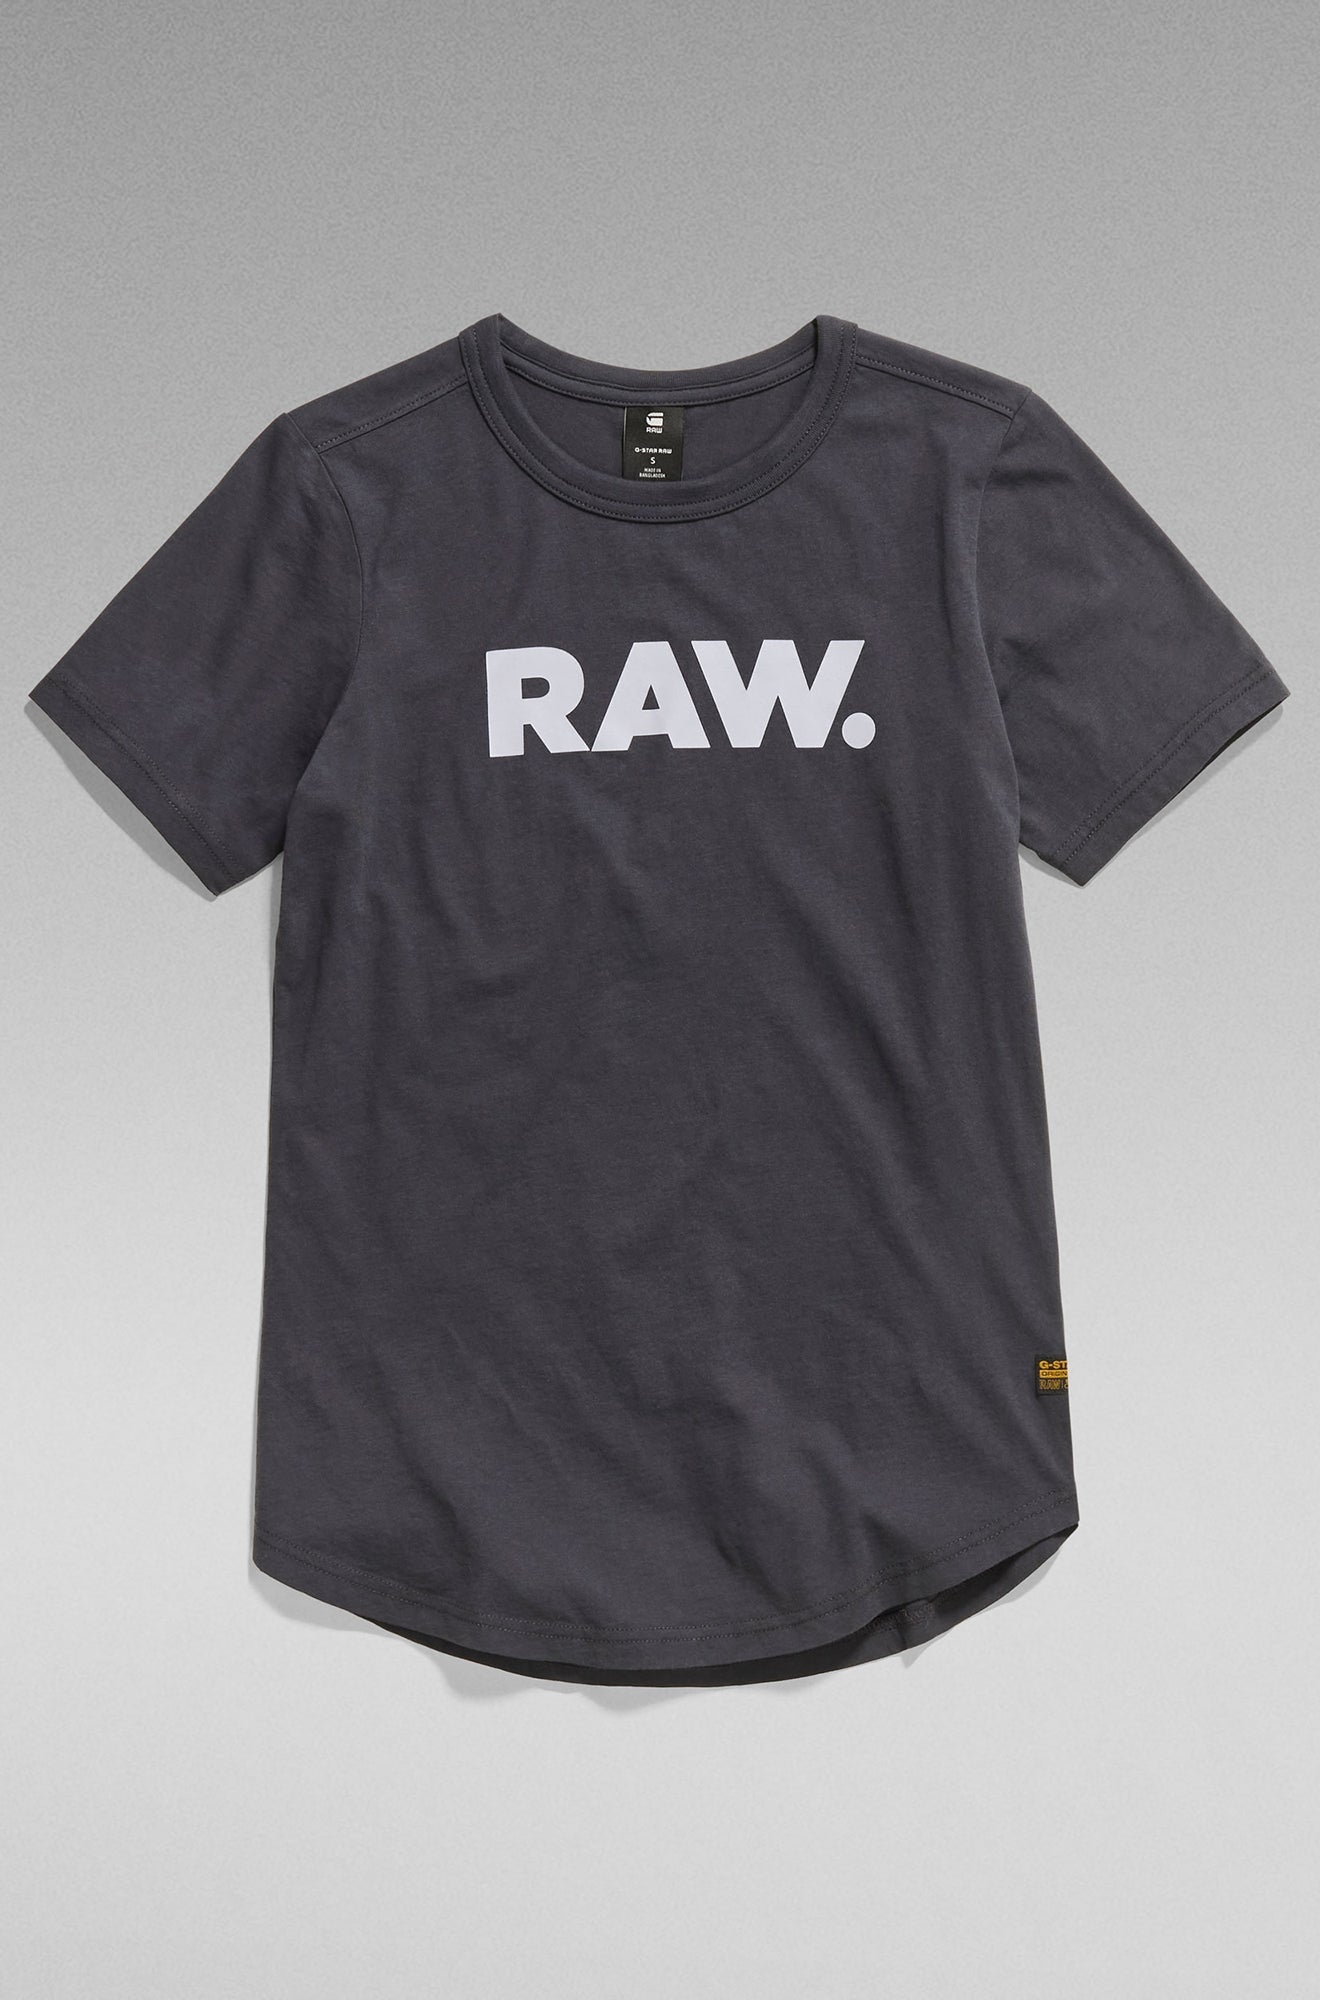 T-Shirt pour femme par G-Star RAW | D21226 4107 Gris foncé/992 | Boutique Vvög, vêtements mode pour homme et femme